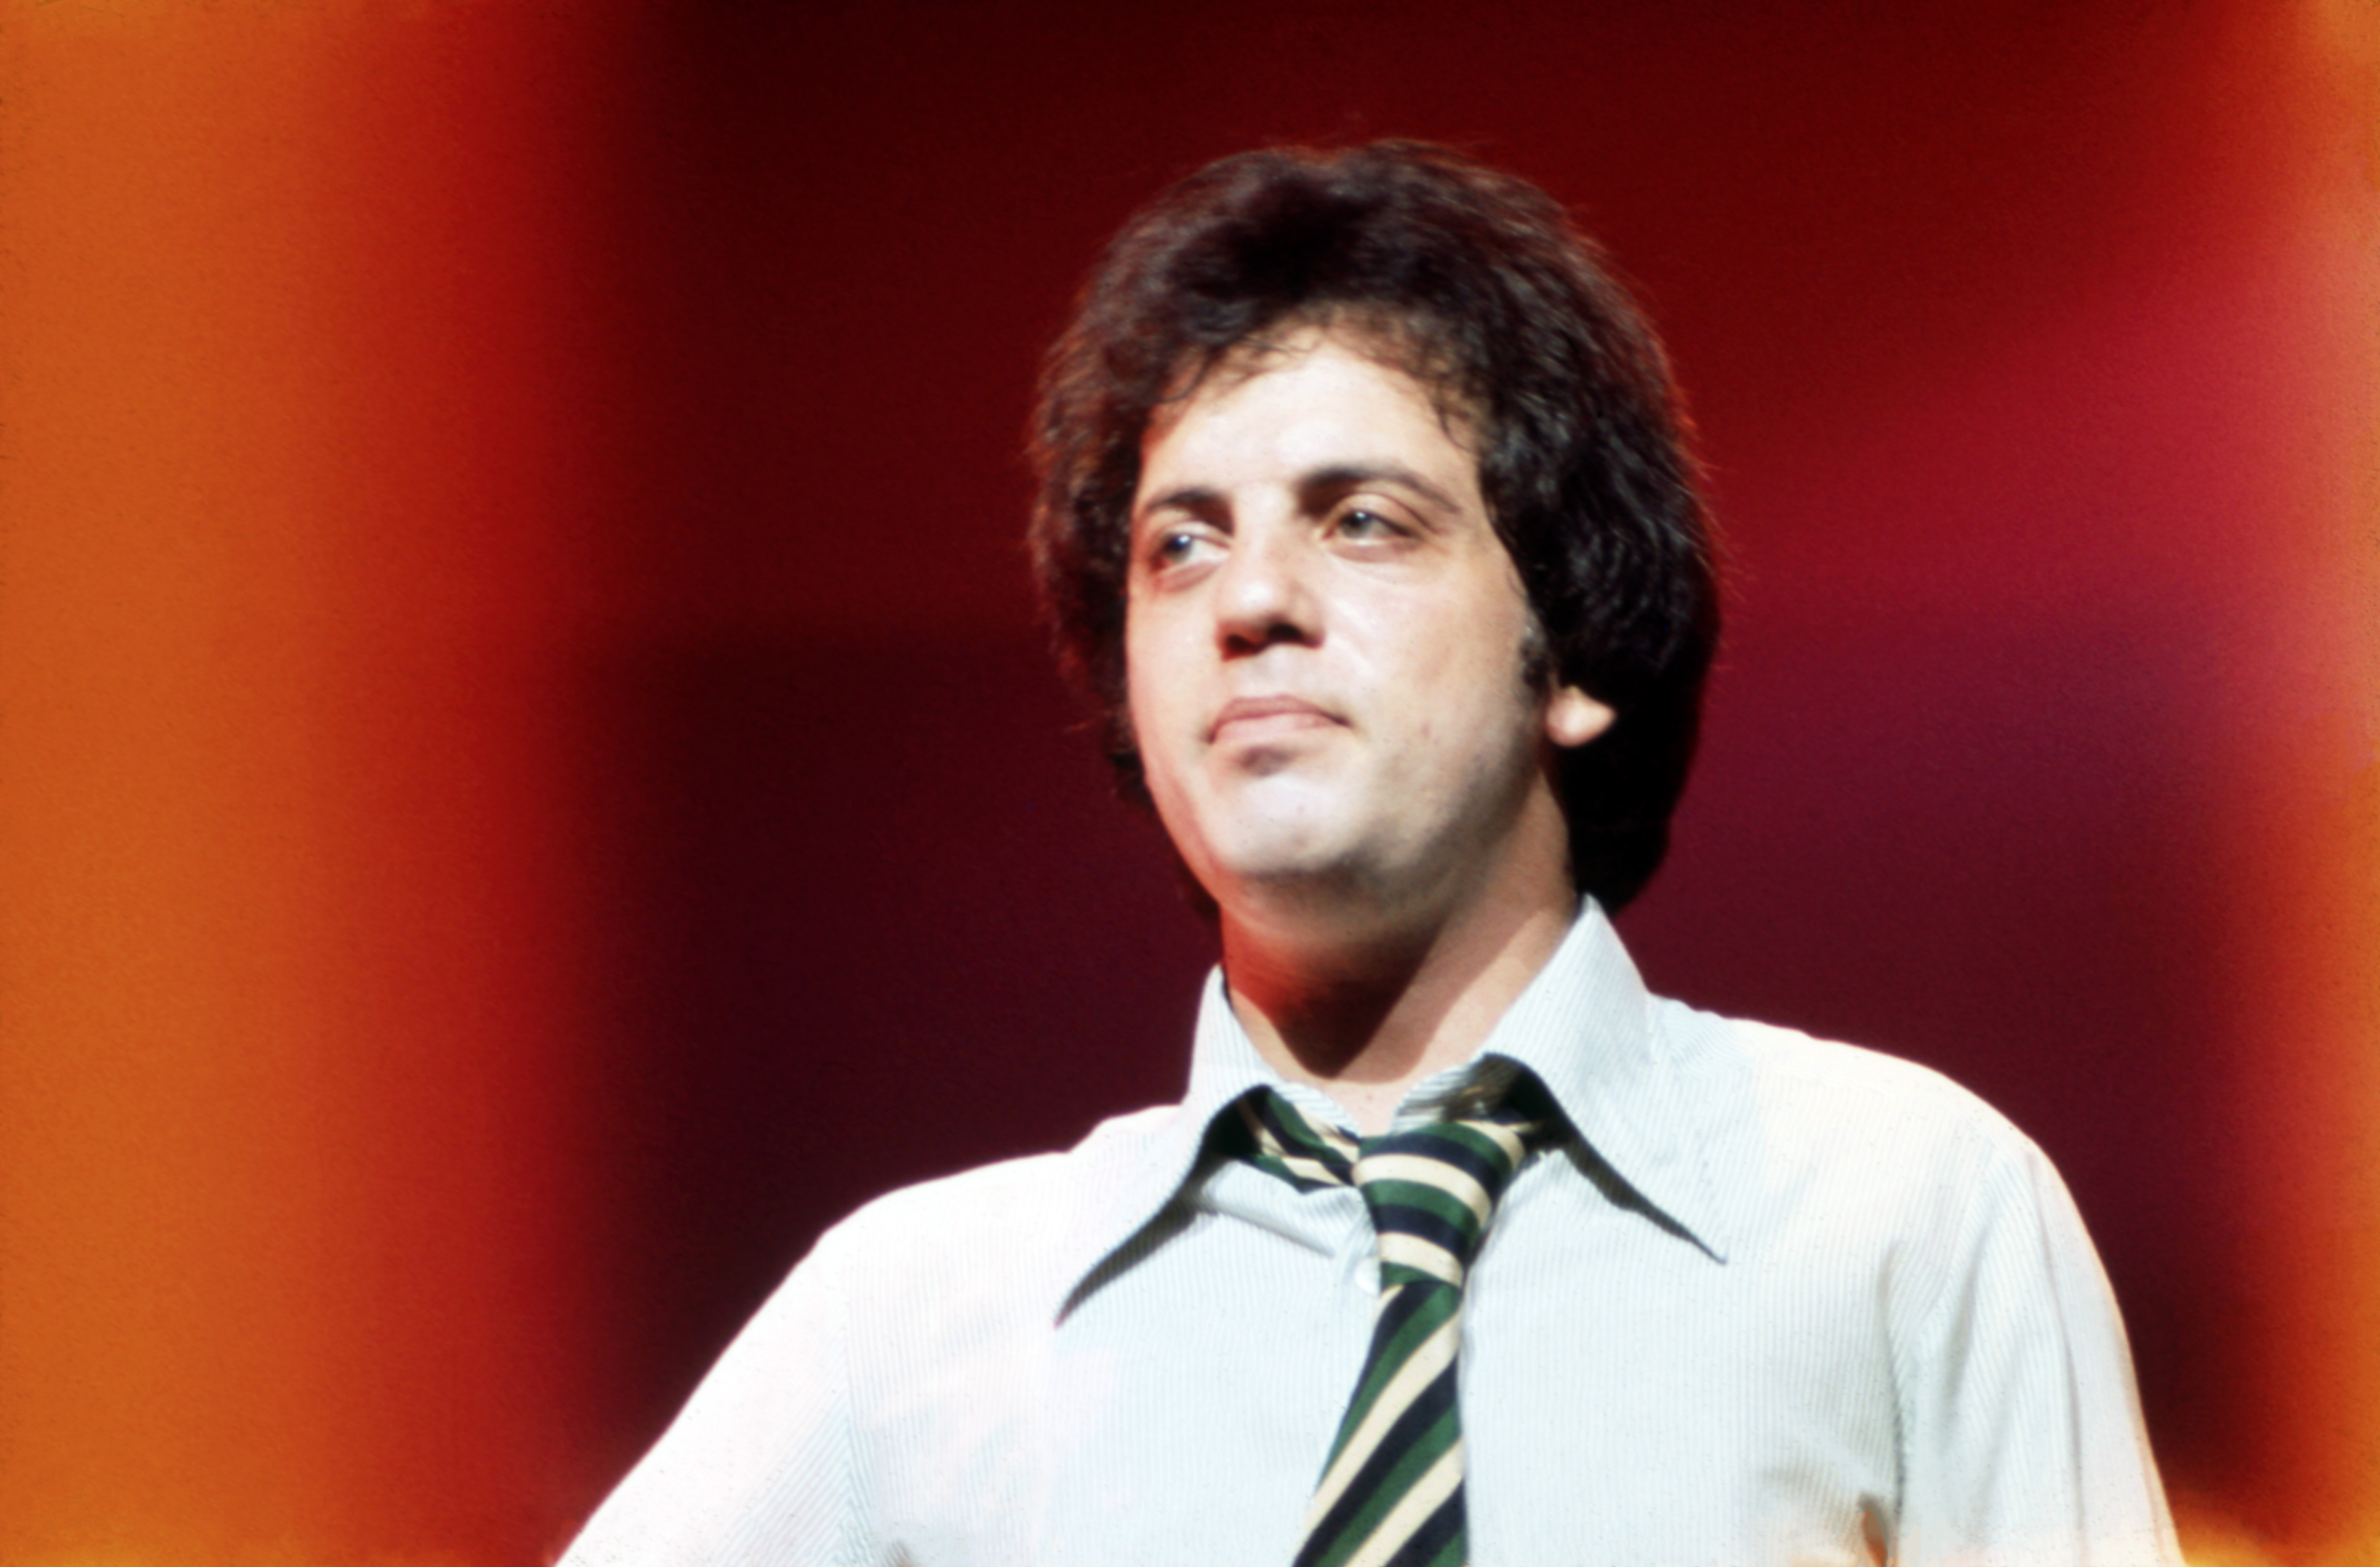 Billy Joel im Juni 1980 bei einem Auftritt im Madison Square Garden in New York City | Quelle: Getty Images